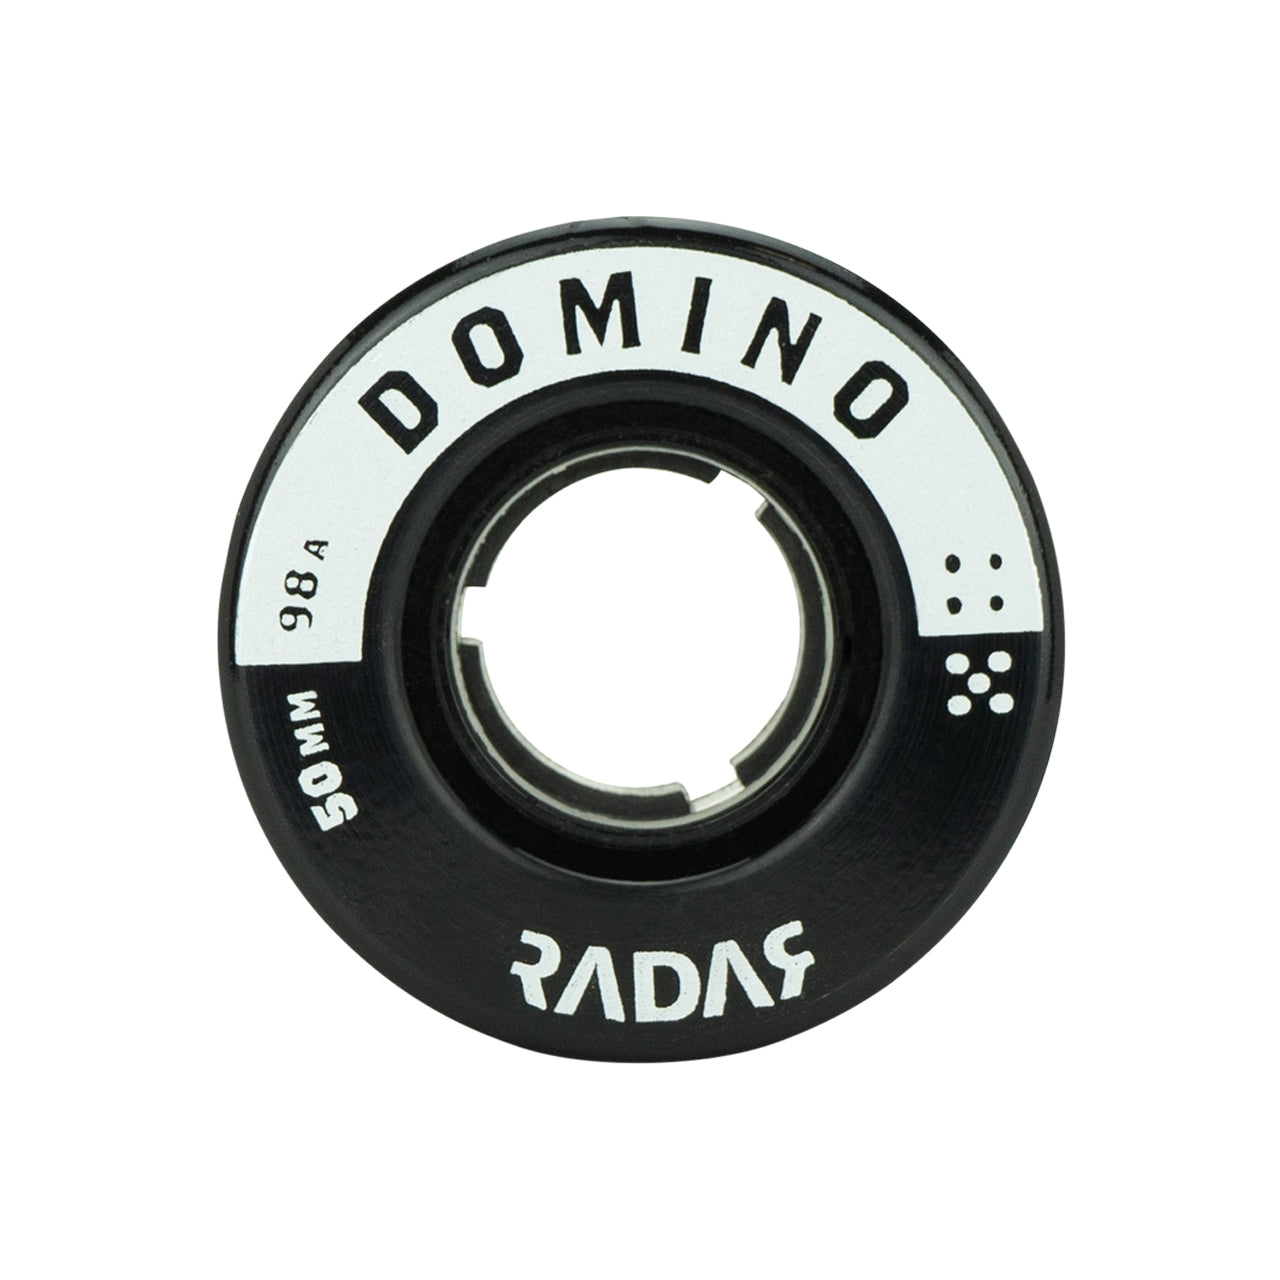 Ruedas Radar Domino Negras/Plateadas 50mm 98a - Juego de 4